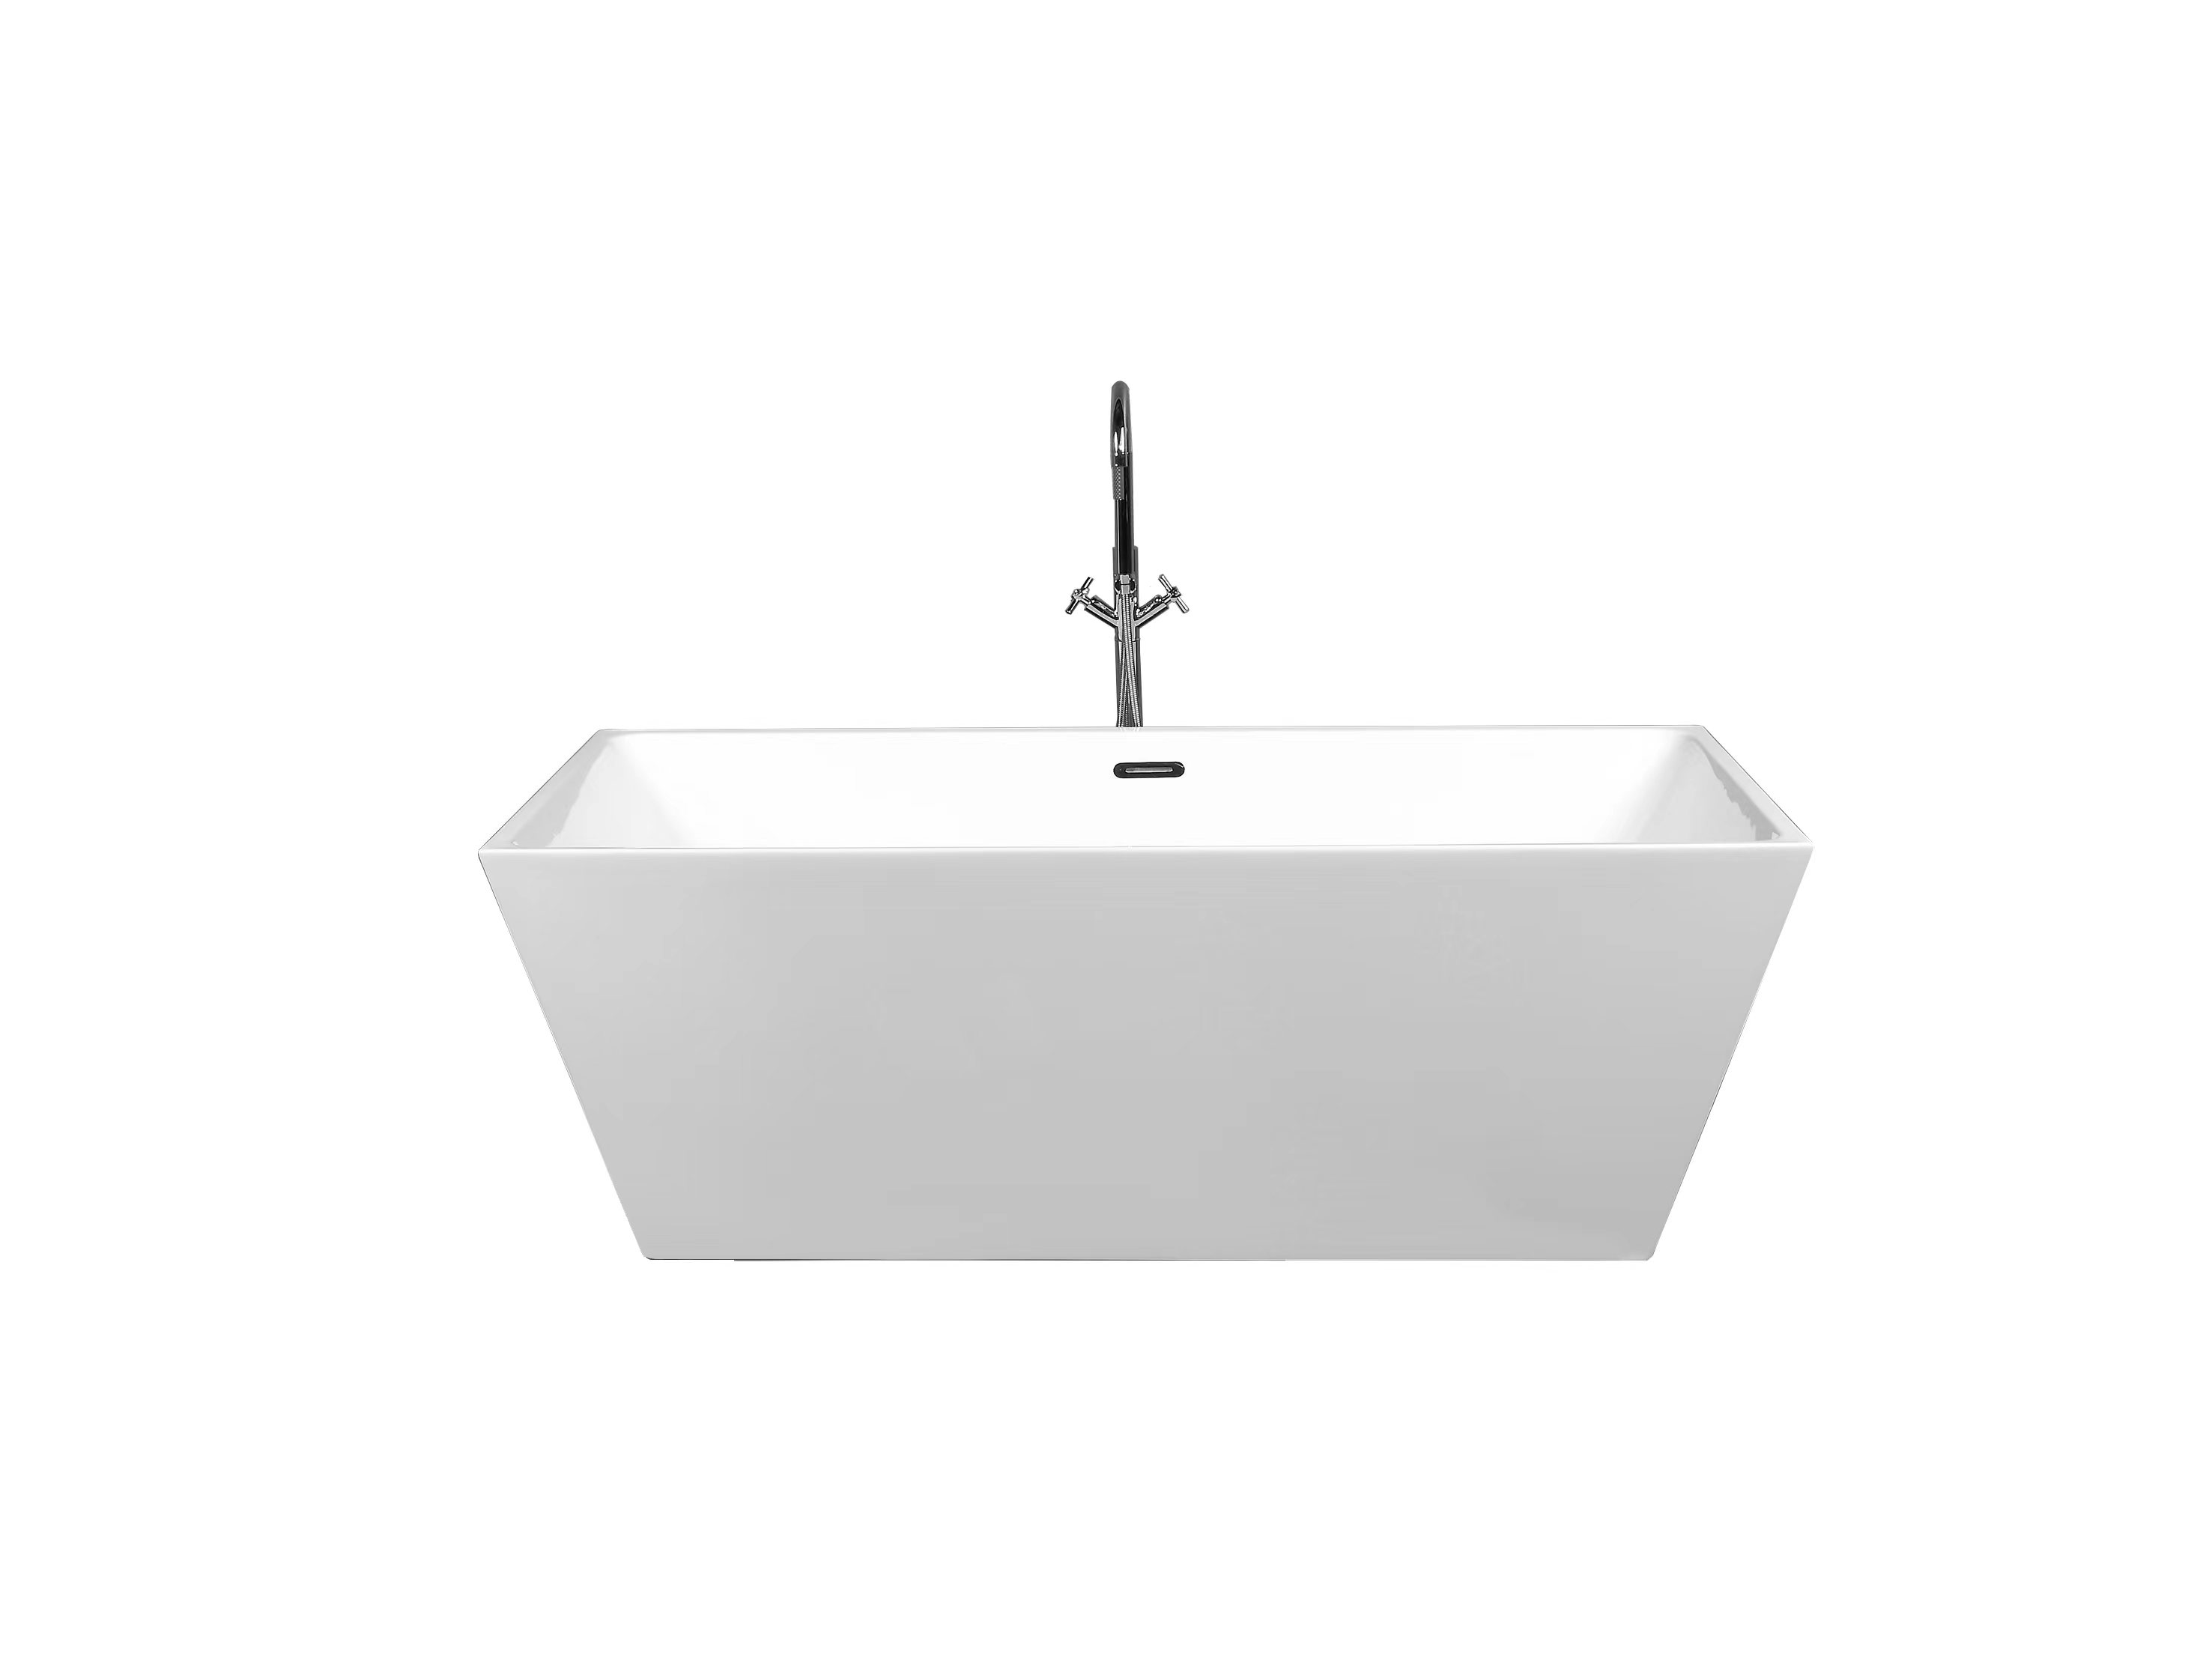 Duko-Acrylic freestanding bathtub-HAMONY 67”